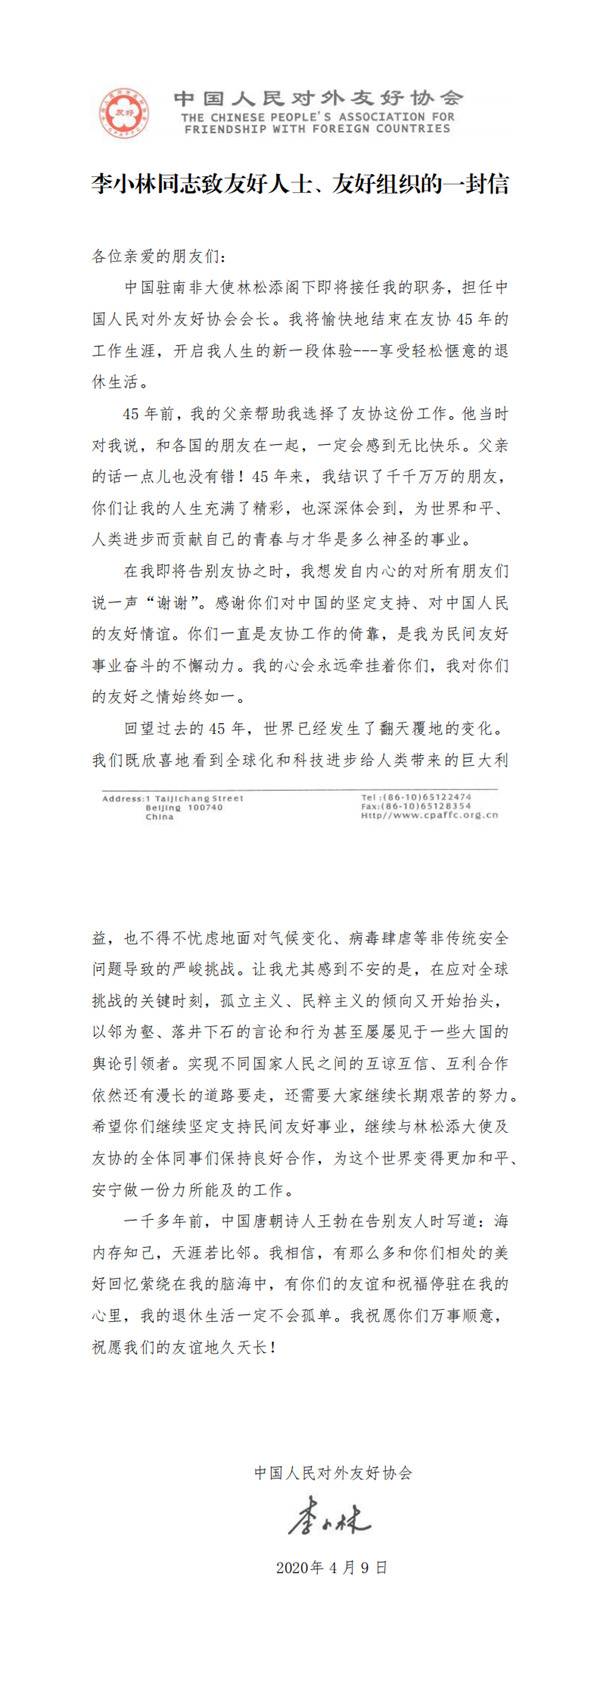 李小林退休 对友好人士、友好组织发了一封信